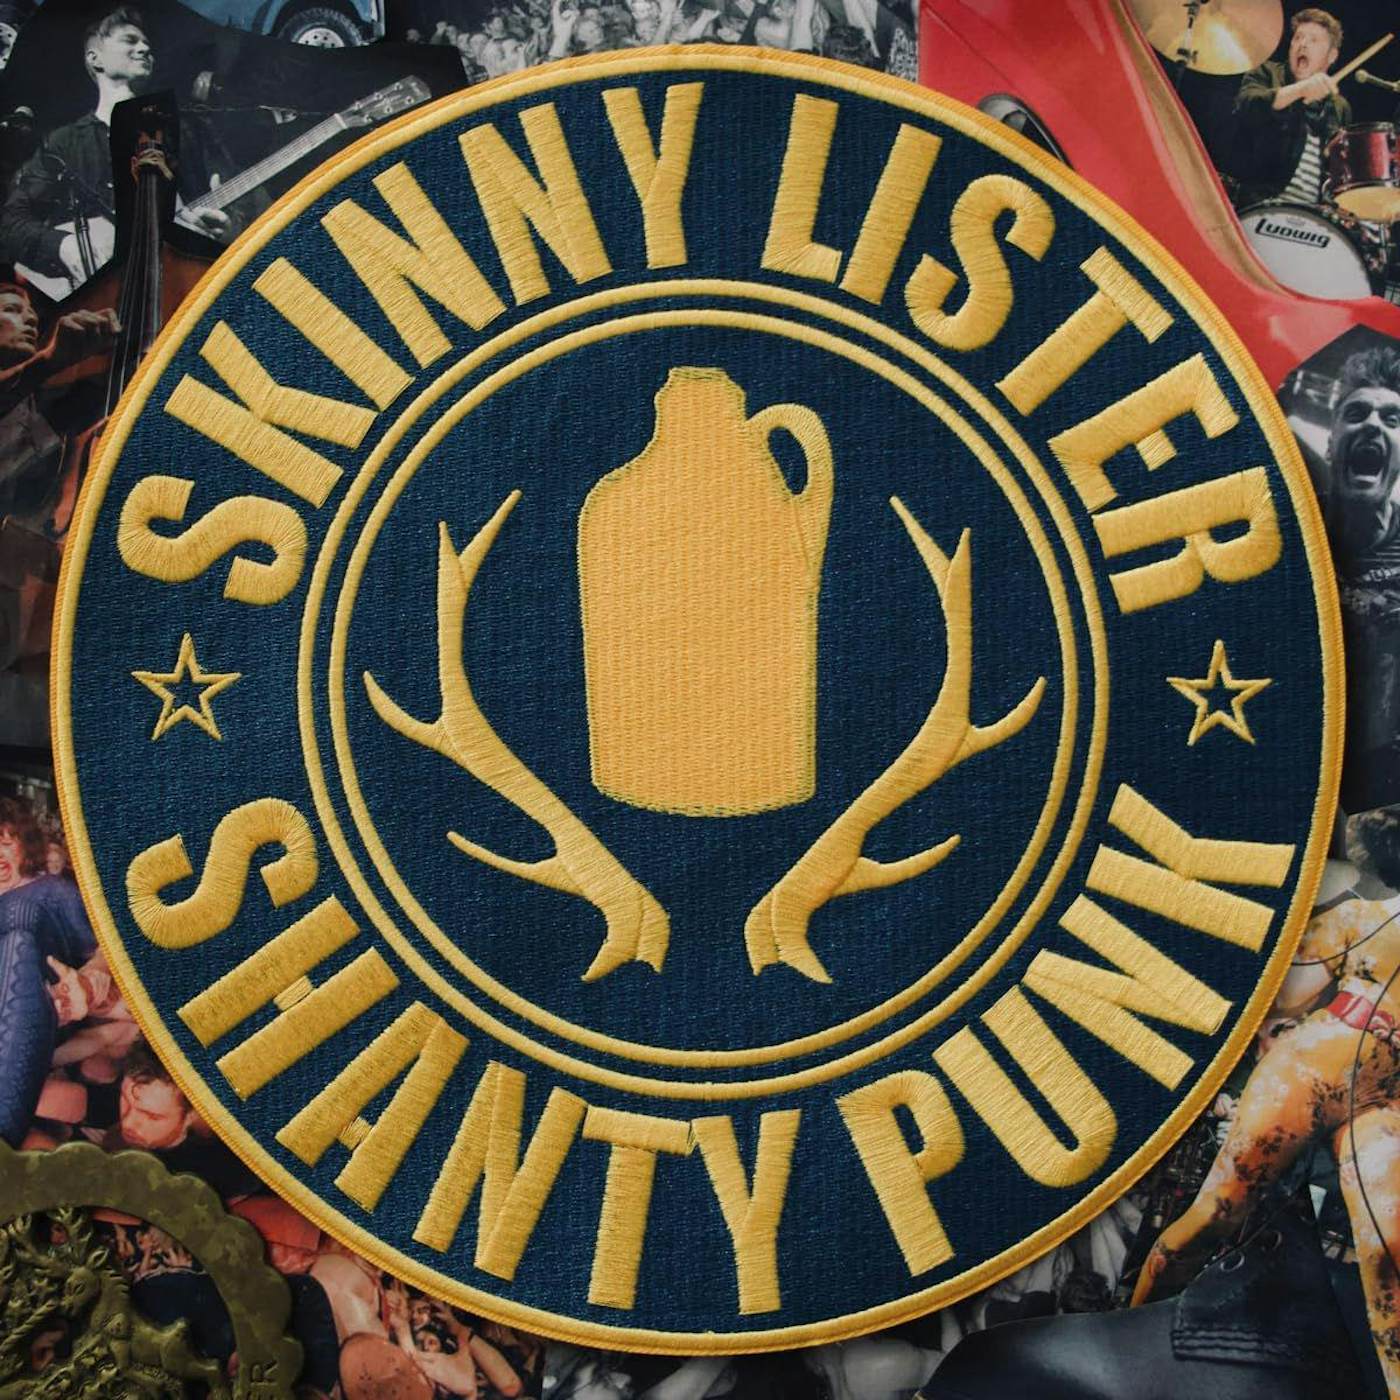 Skinny Lister Shanty Punk Vinyl Record